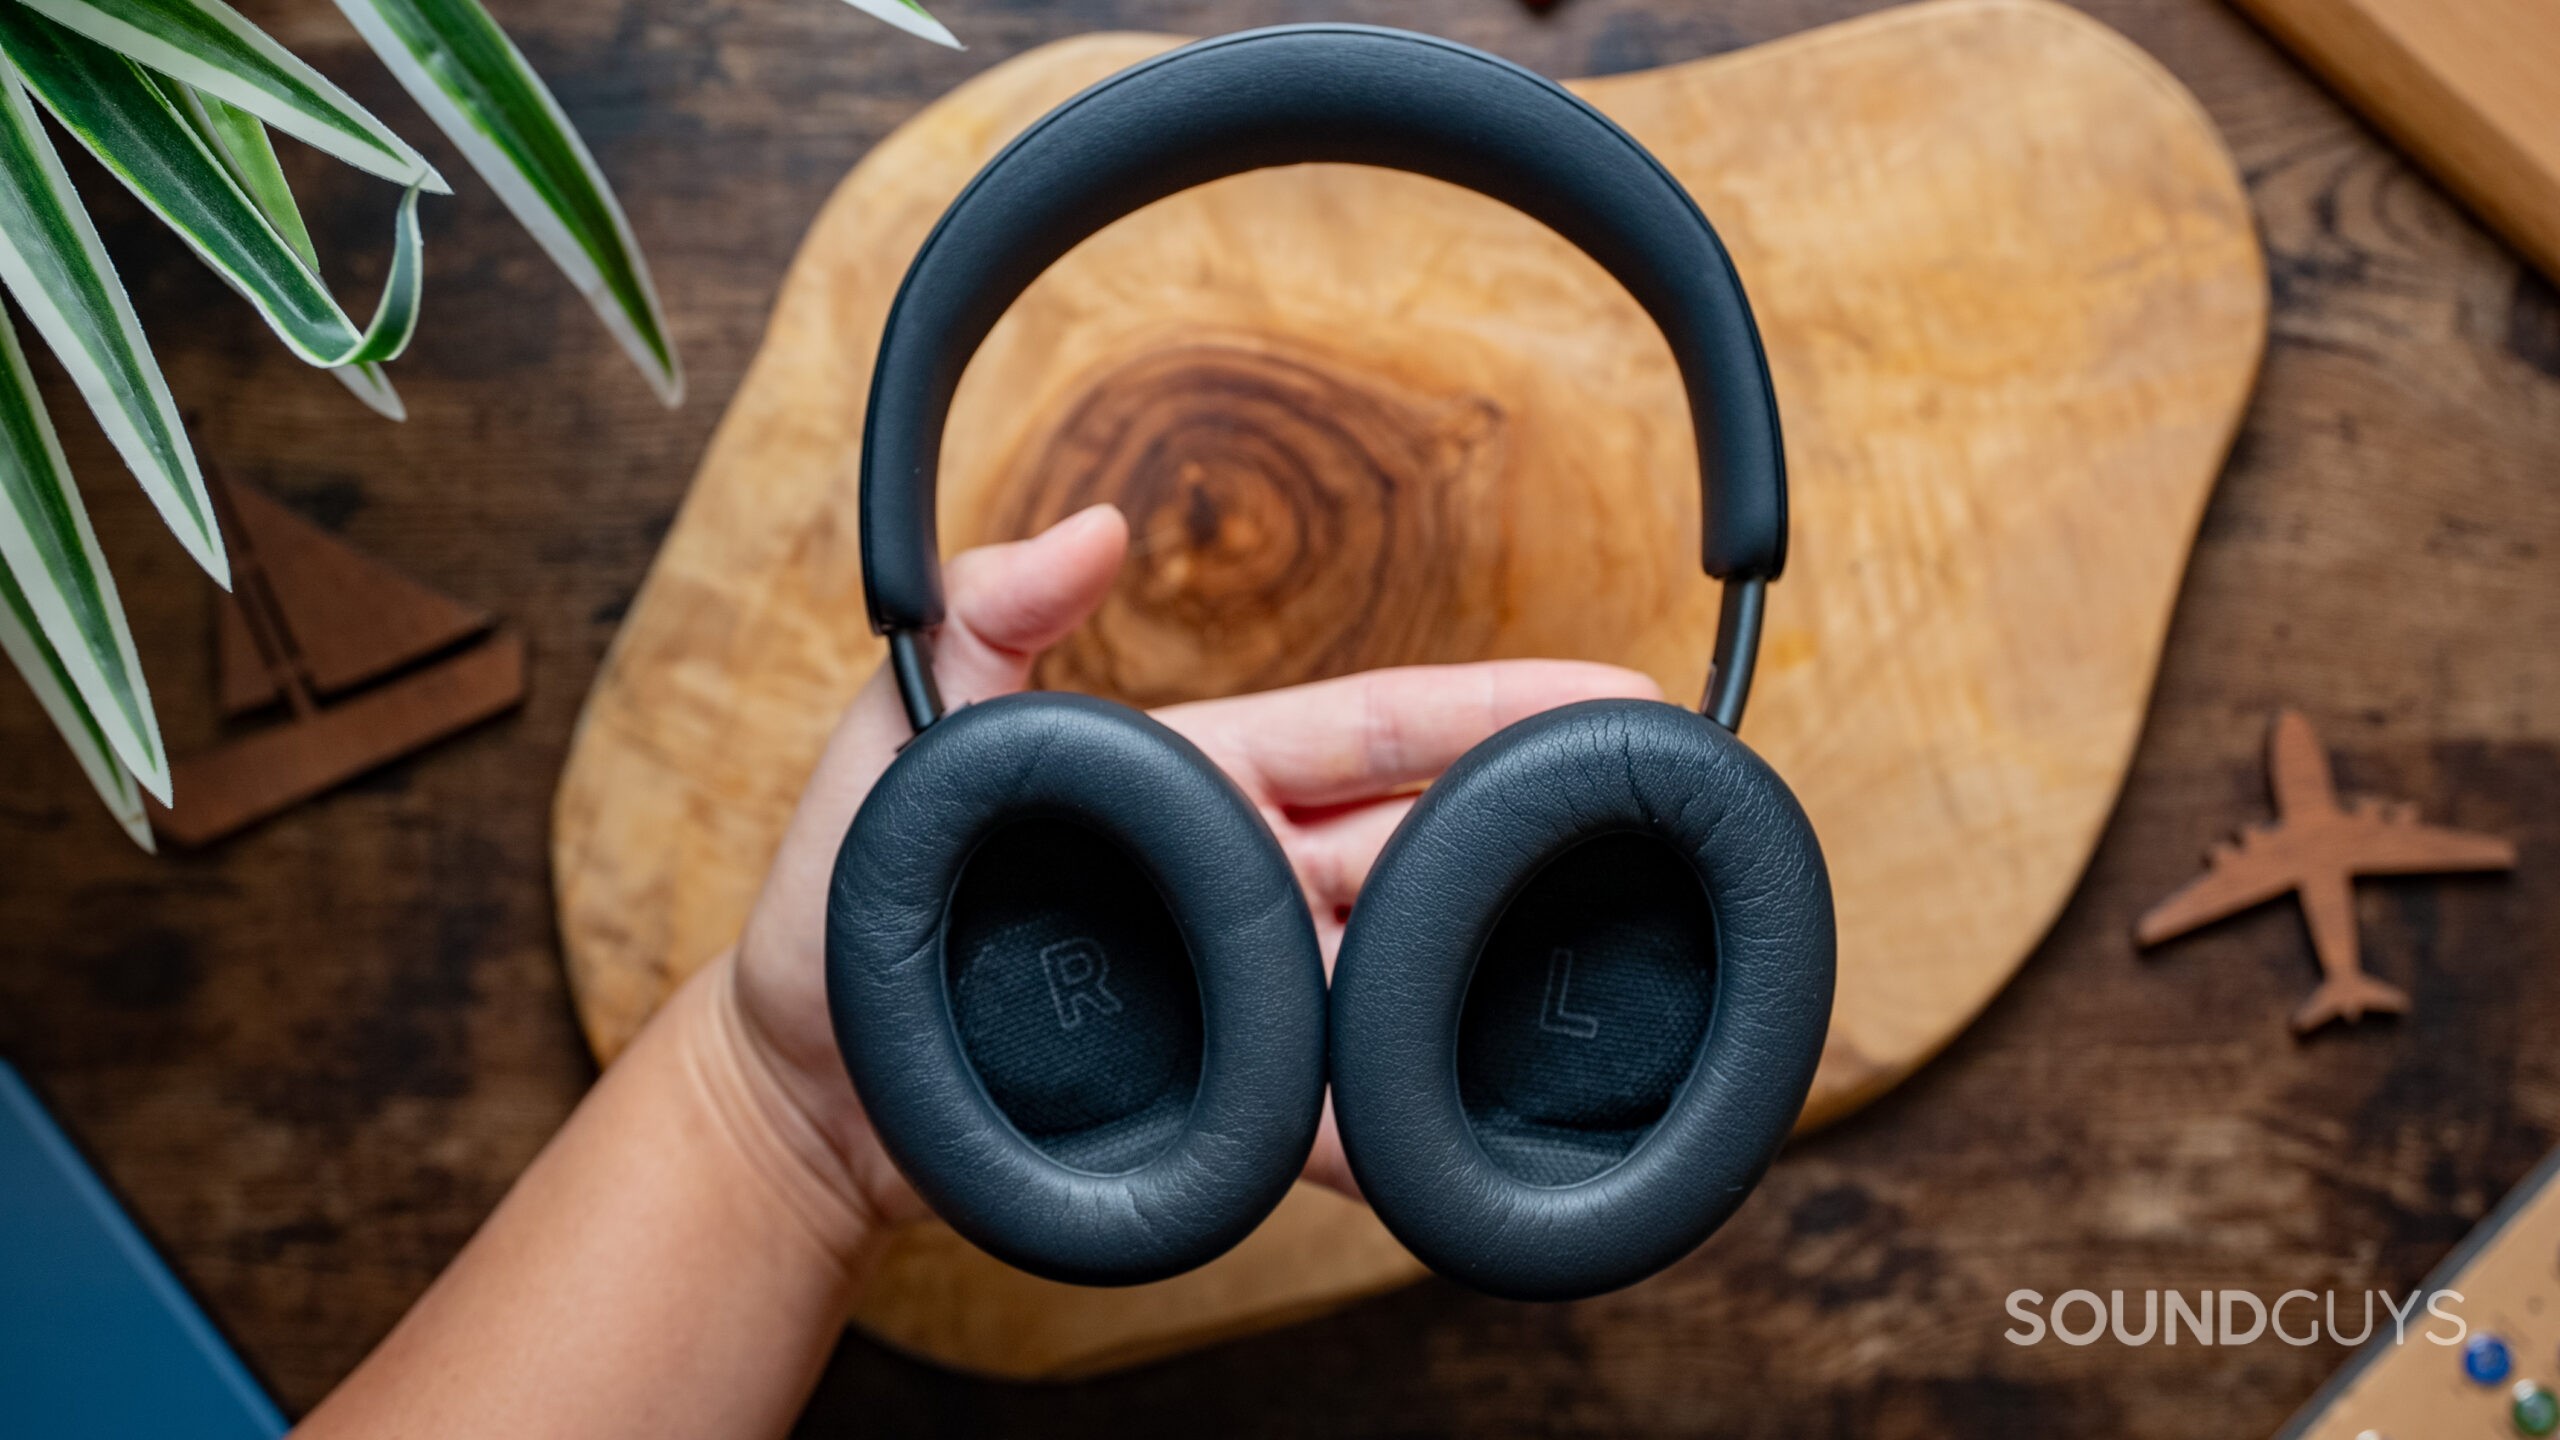 Bose QuietComfort Ultra Headphones review - SoundGuys